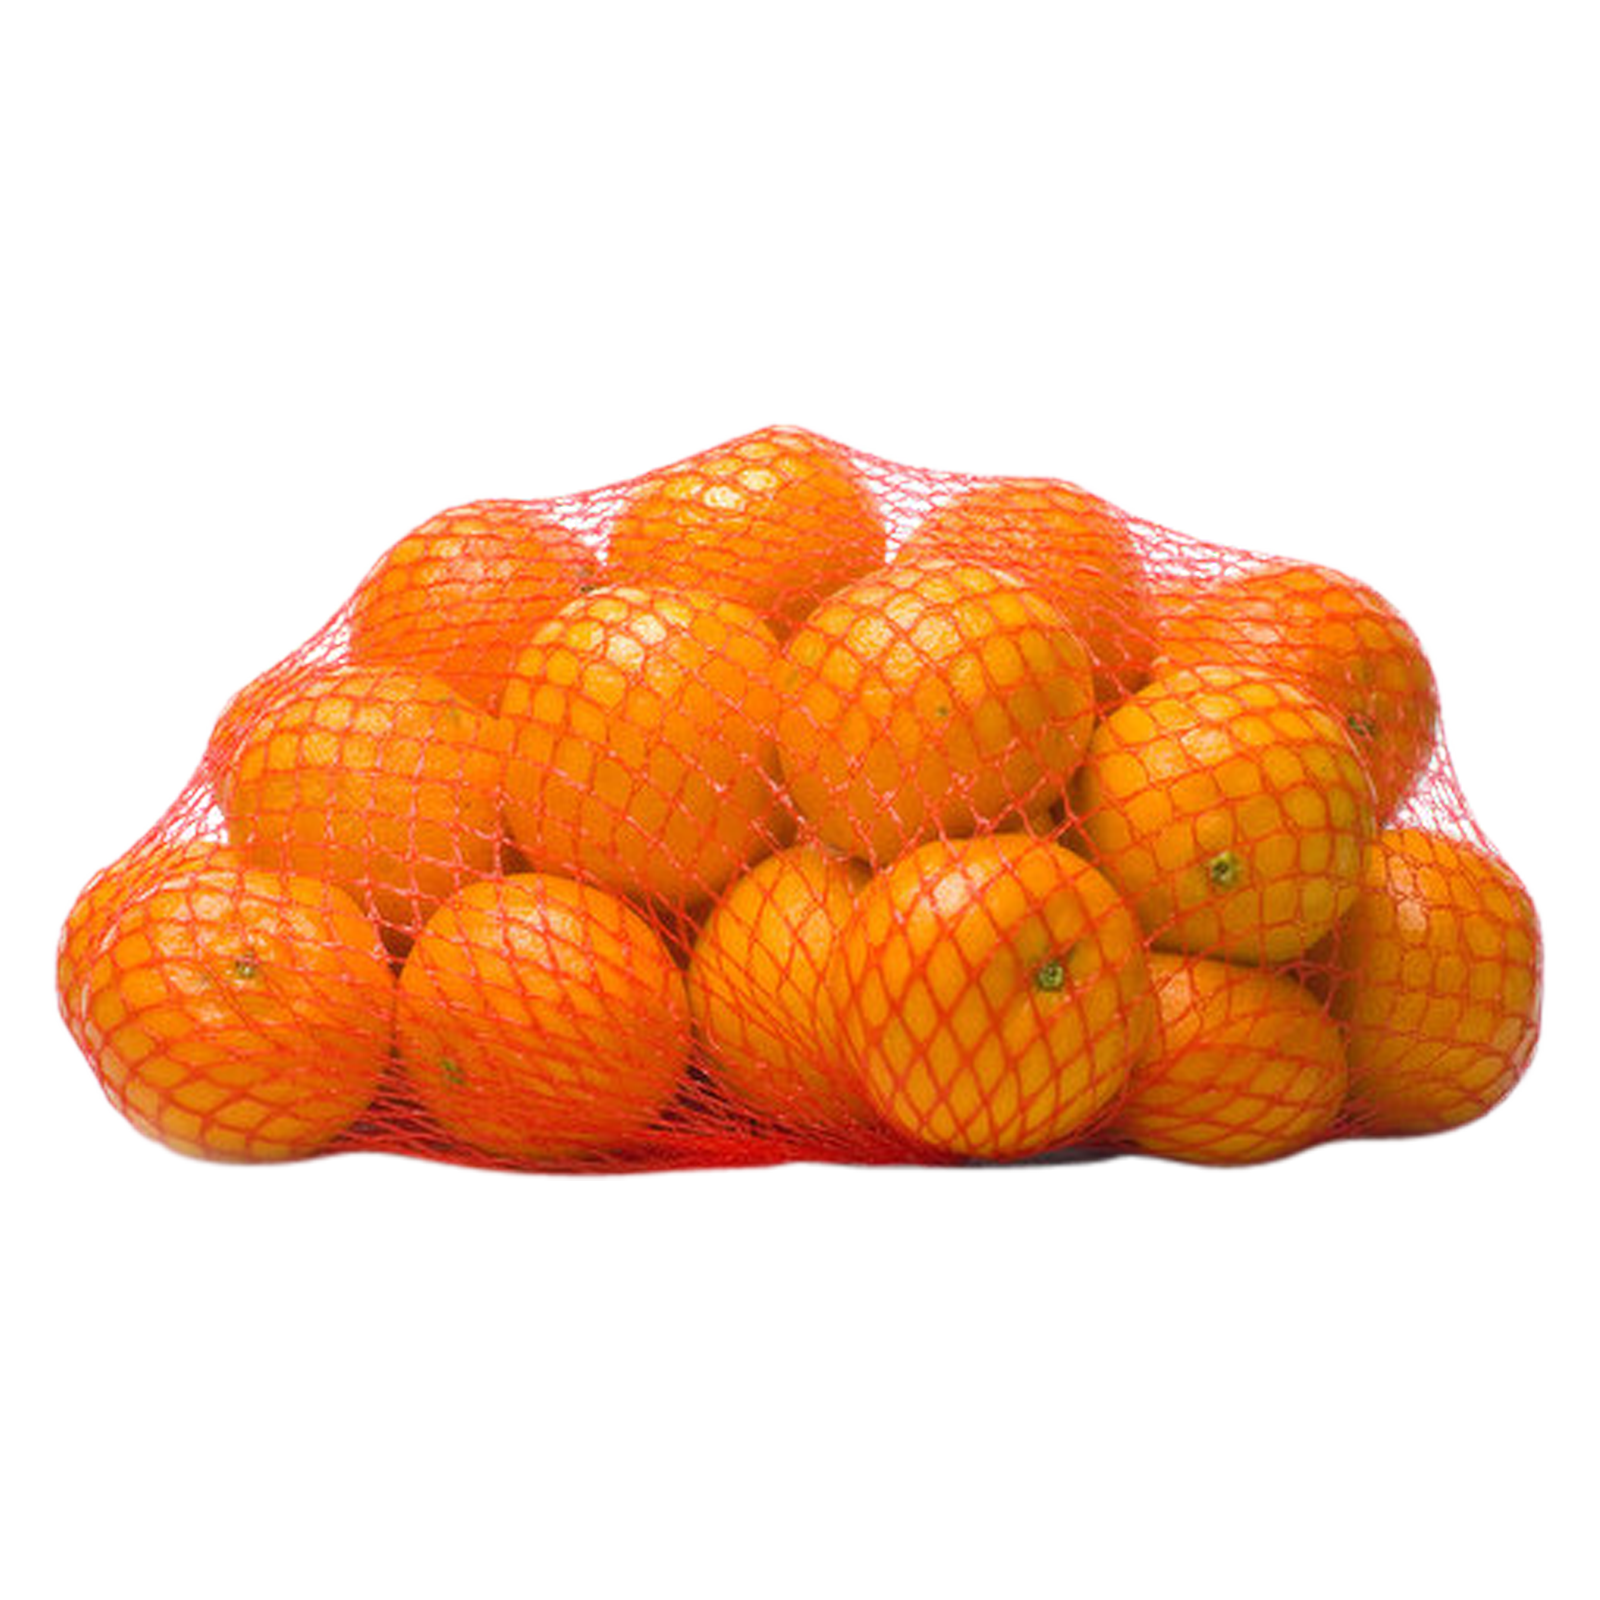 Mandarin Oranges - 3lb